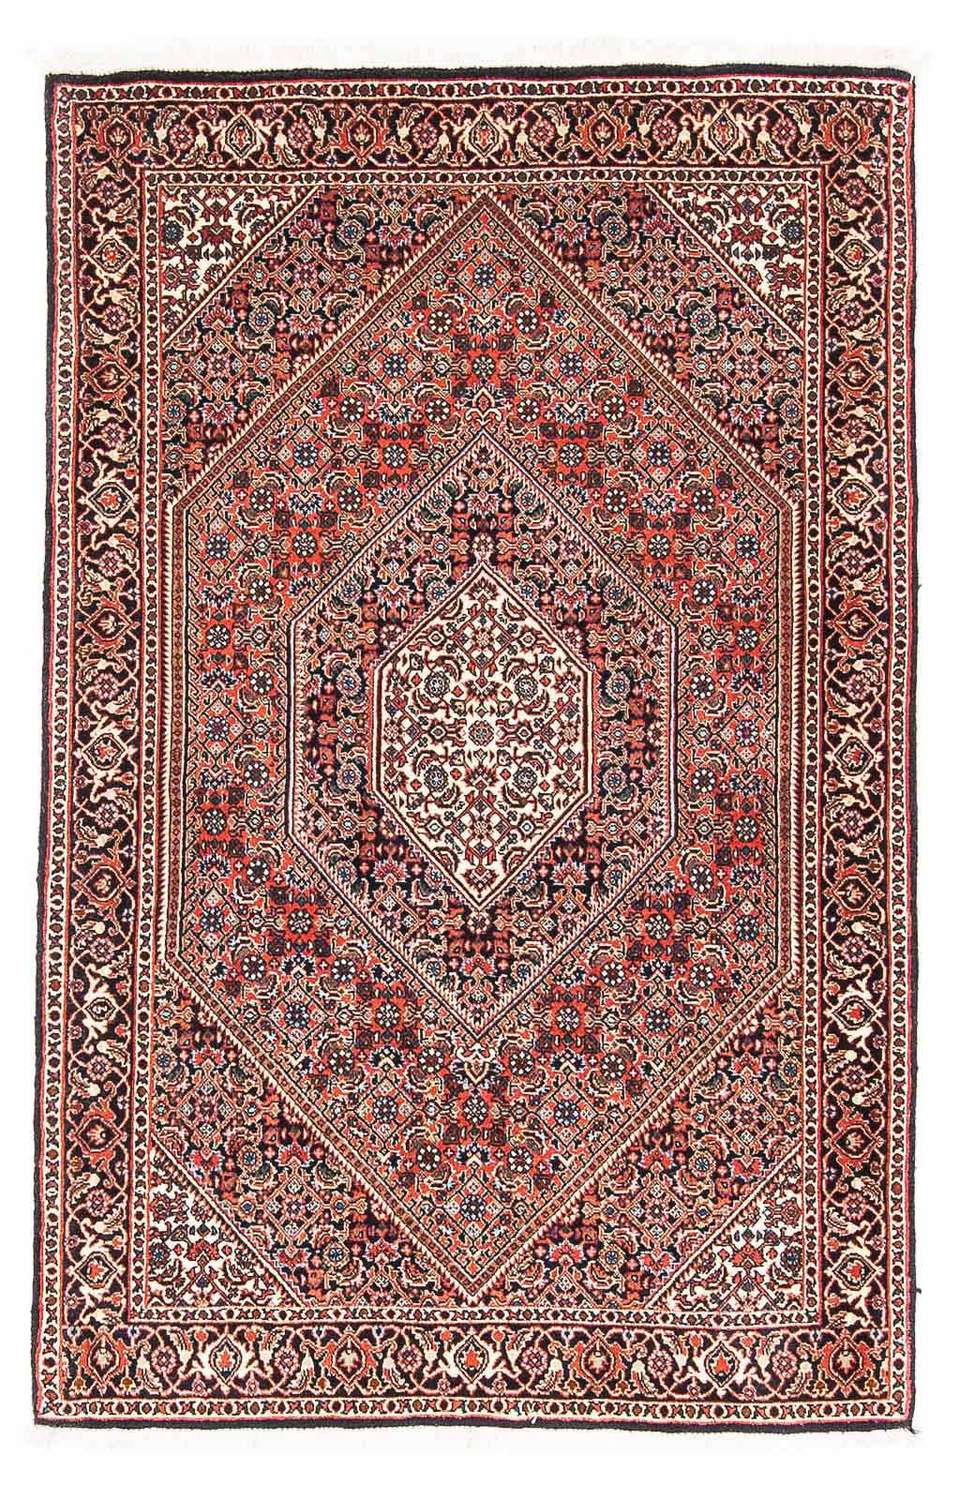 Tapis persan - Bidjar - 145 x 91 cm - rouge clair